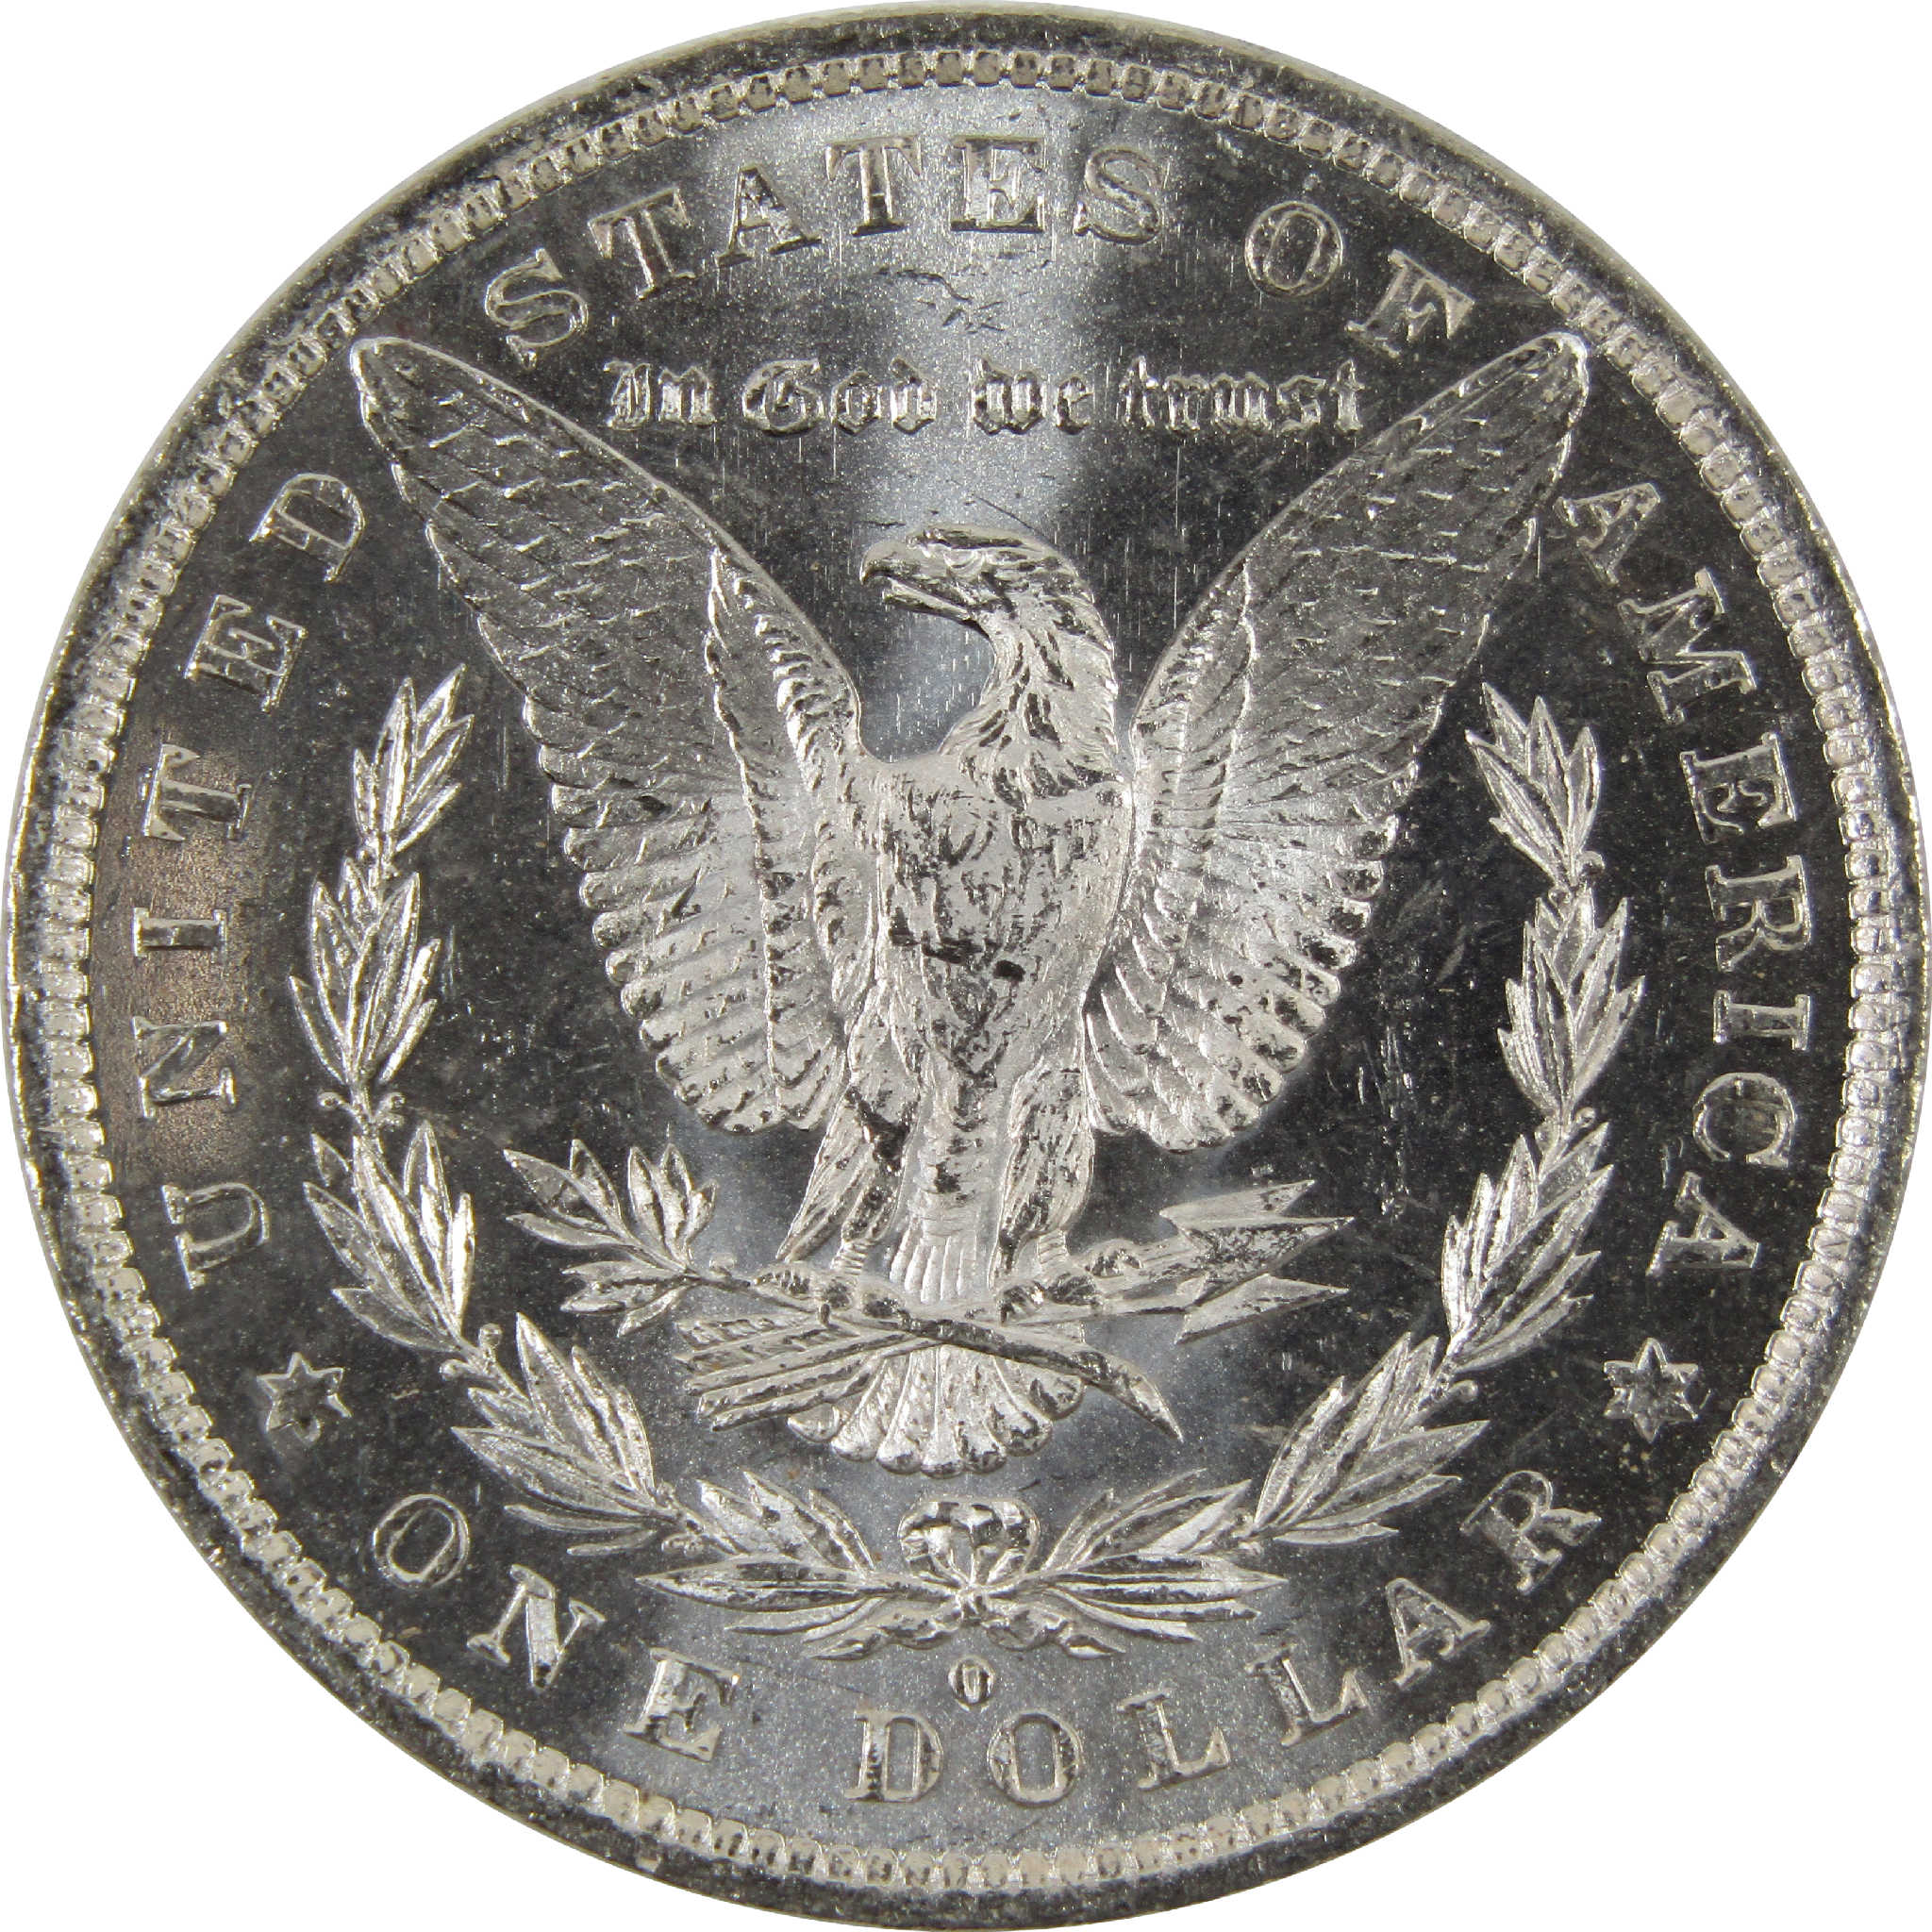 1882 O Morgan Dollar BU Uncirculated 90% Silver $1 Coin SKU:I8903 - Morgan coin - Morgan silver dollar - Morgan silver dollar for sale - Profile Coins &amp; Collectibles